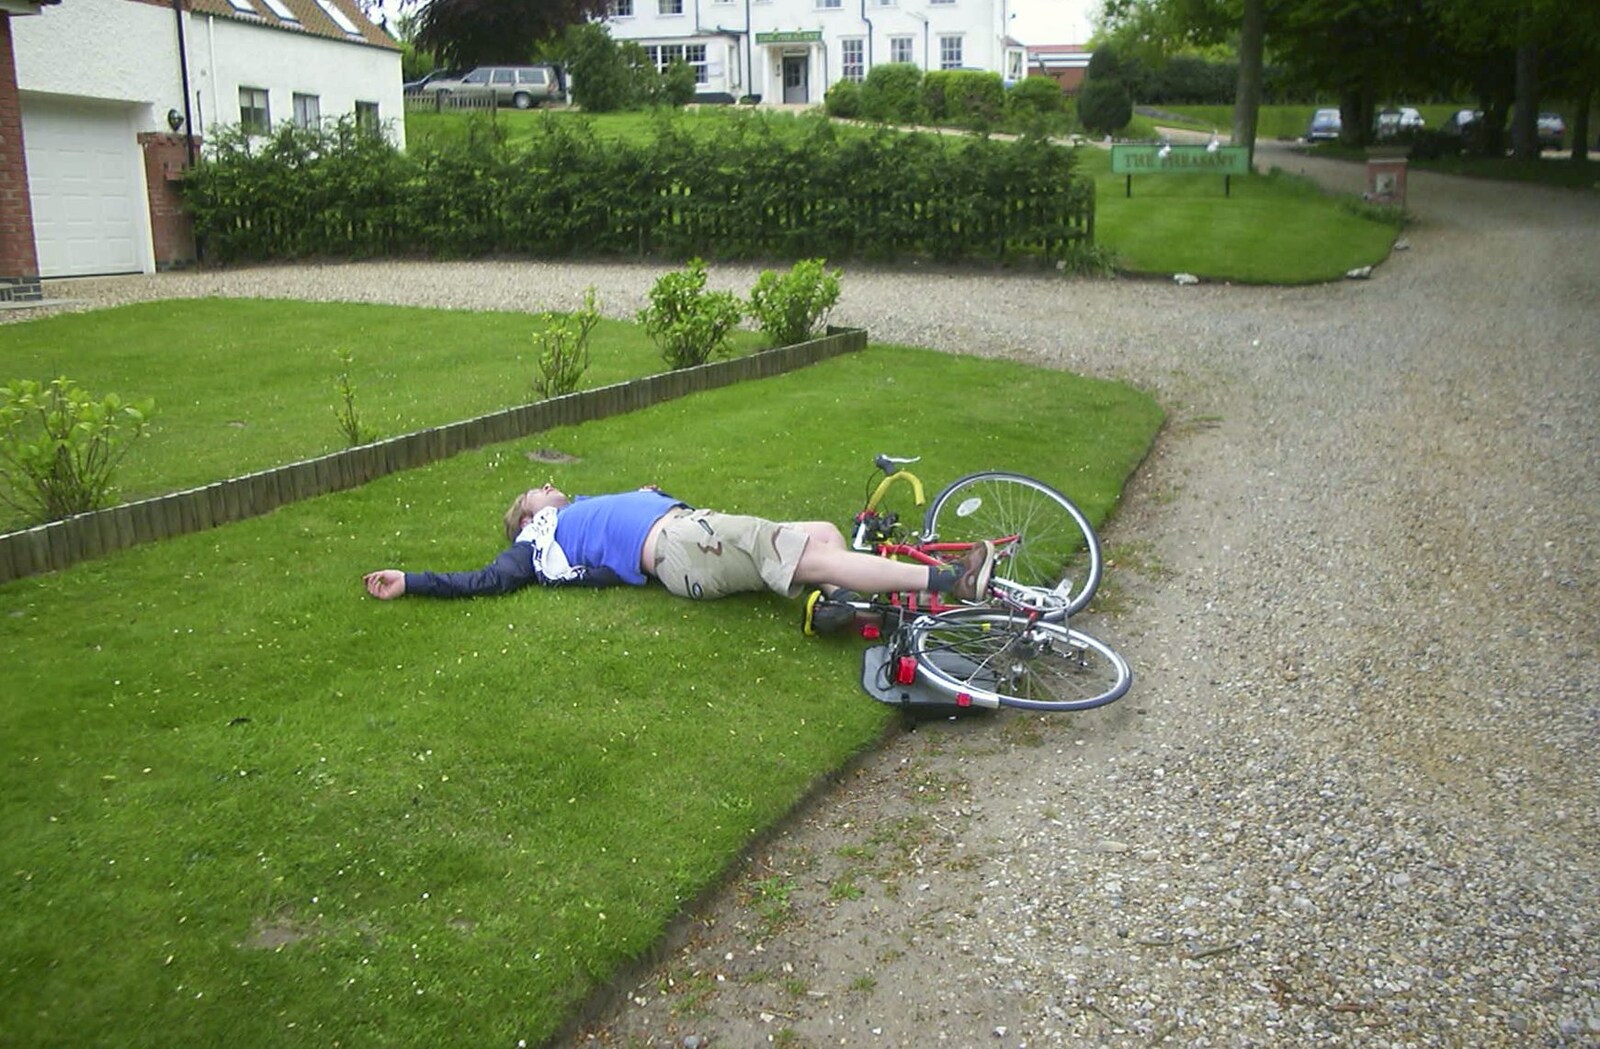 The BSCC Bike Ride Weekend, Kelling, Norfolk - 9th May 2003: Marc keels off his bike